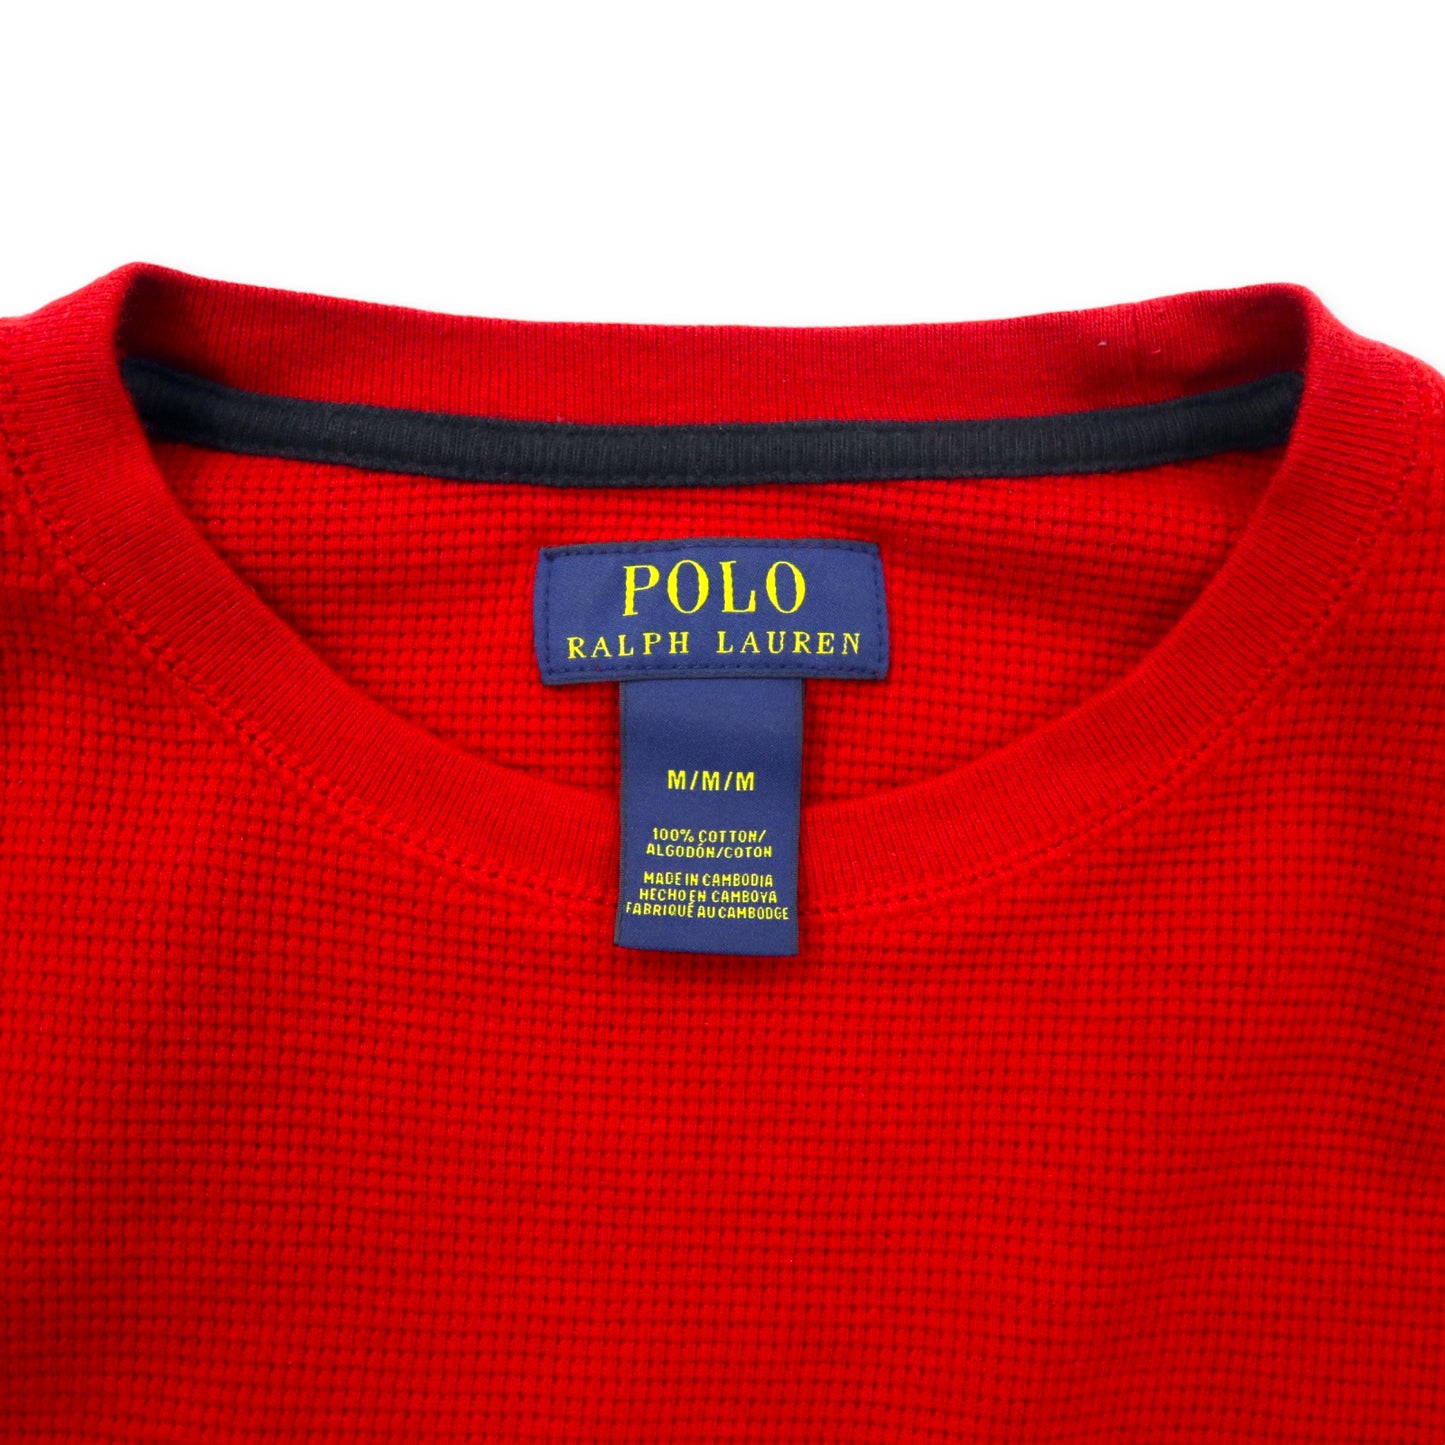 POLO RALPH LAUREN サーマル ロングスリーブ Tシャツ ロンT M レッド コットン スモールポニー刺繍